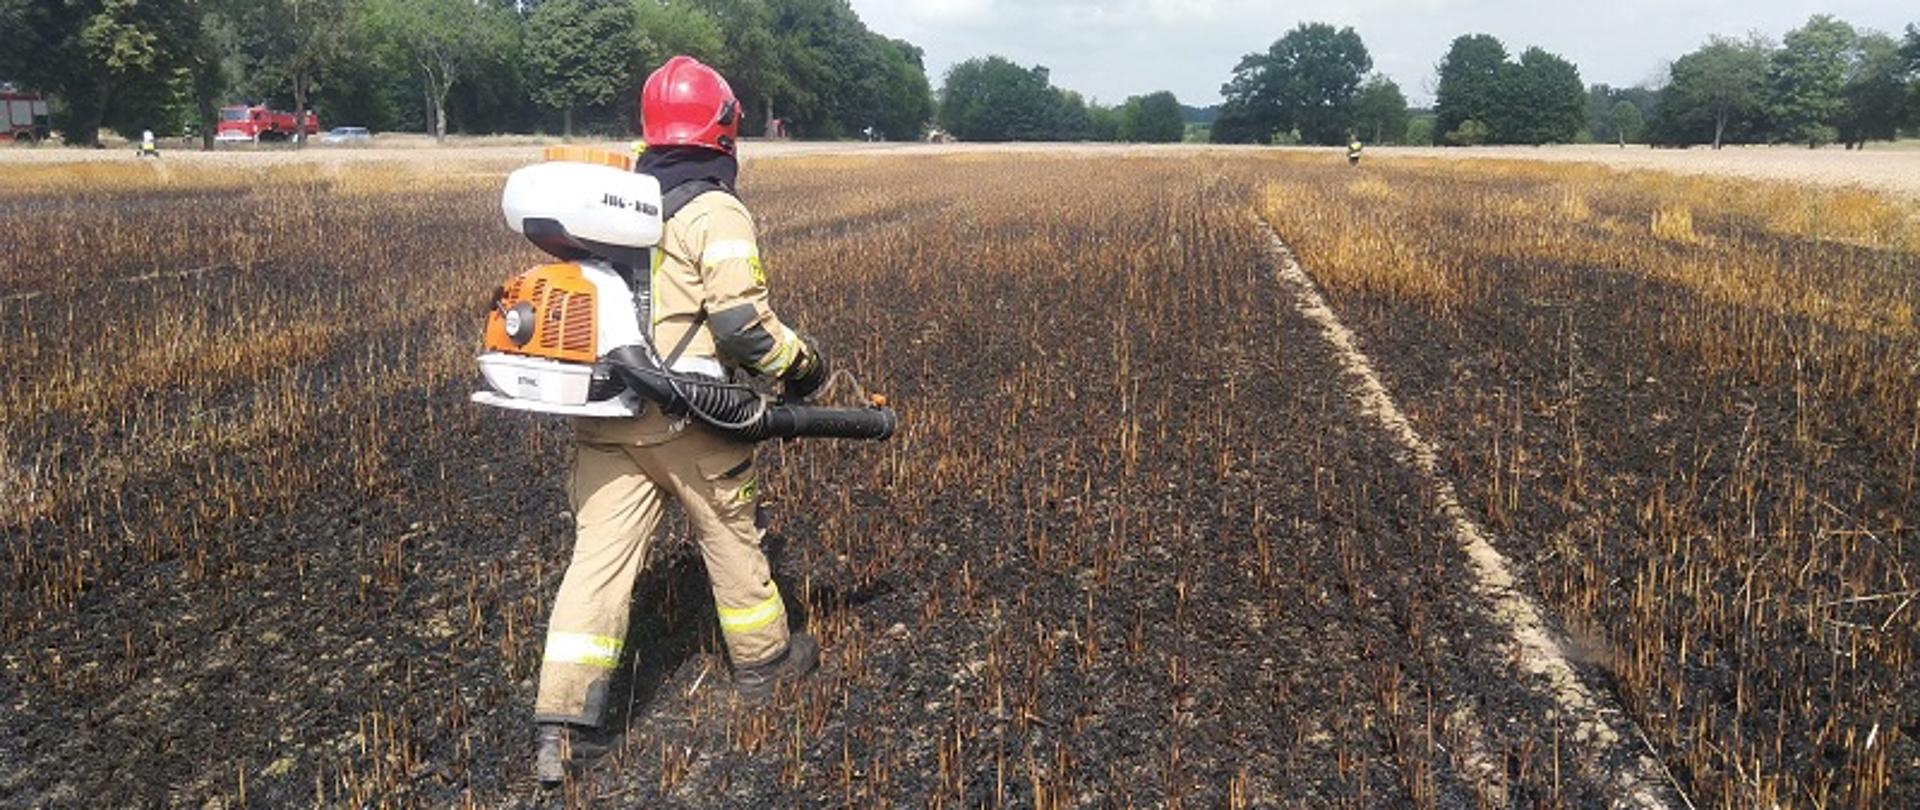 Pożar areału rolnego w miejscowości Kozia Góra. Zdjęcie przedstawia strażaka gaszącego pożar podręcznym sprzętem gaśniczym